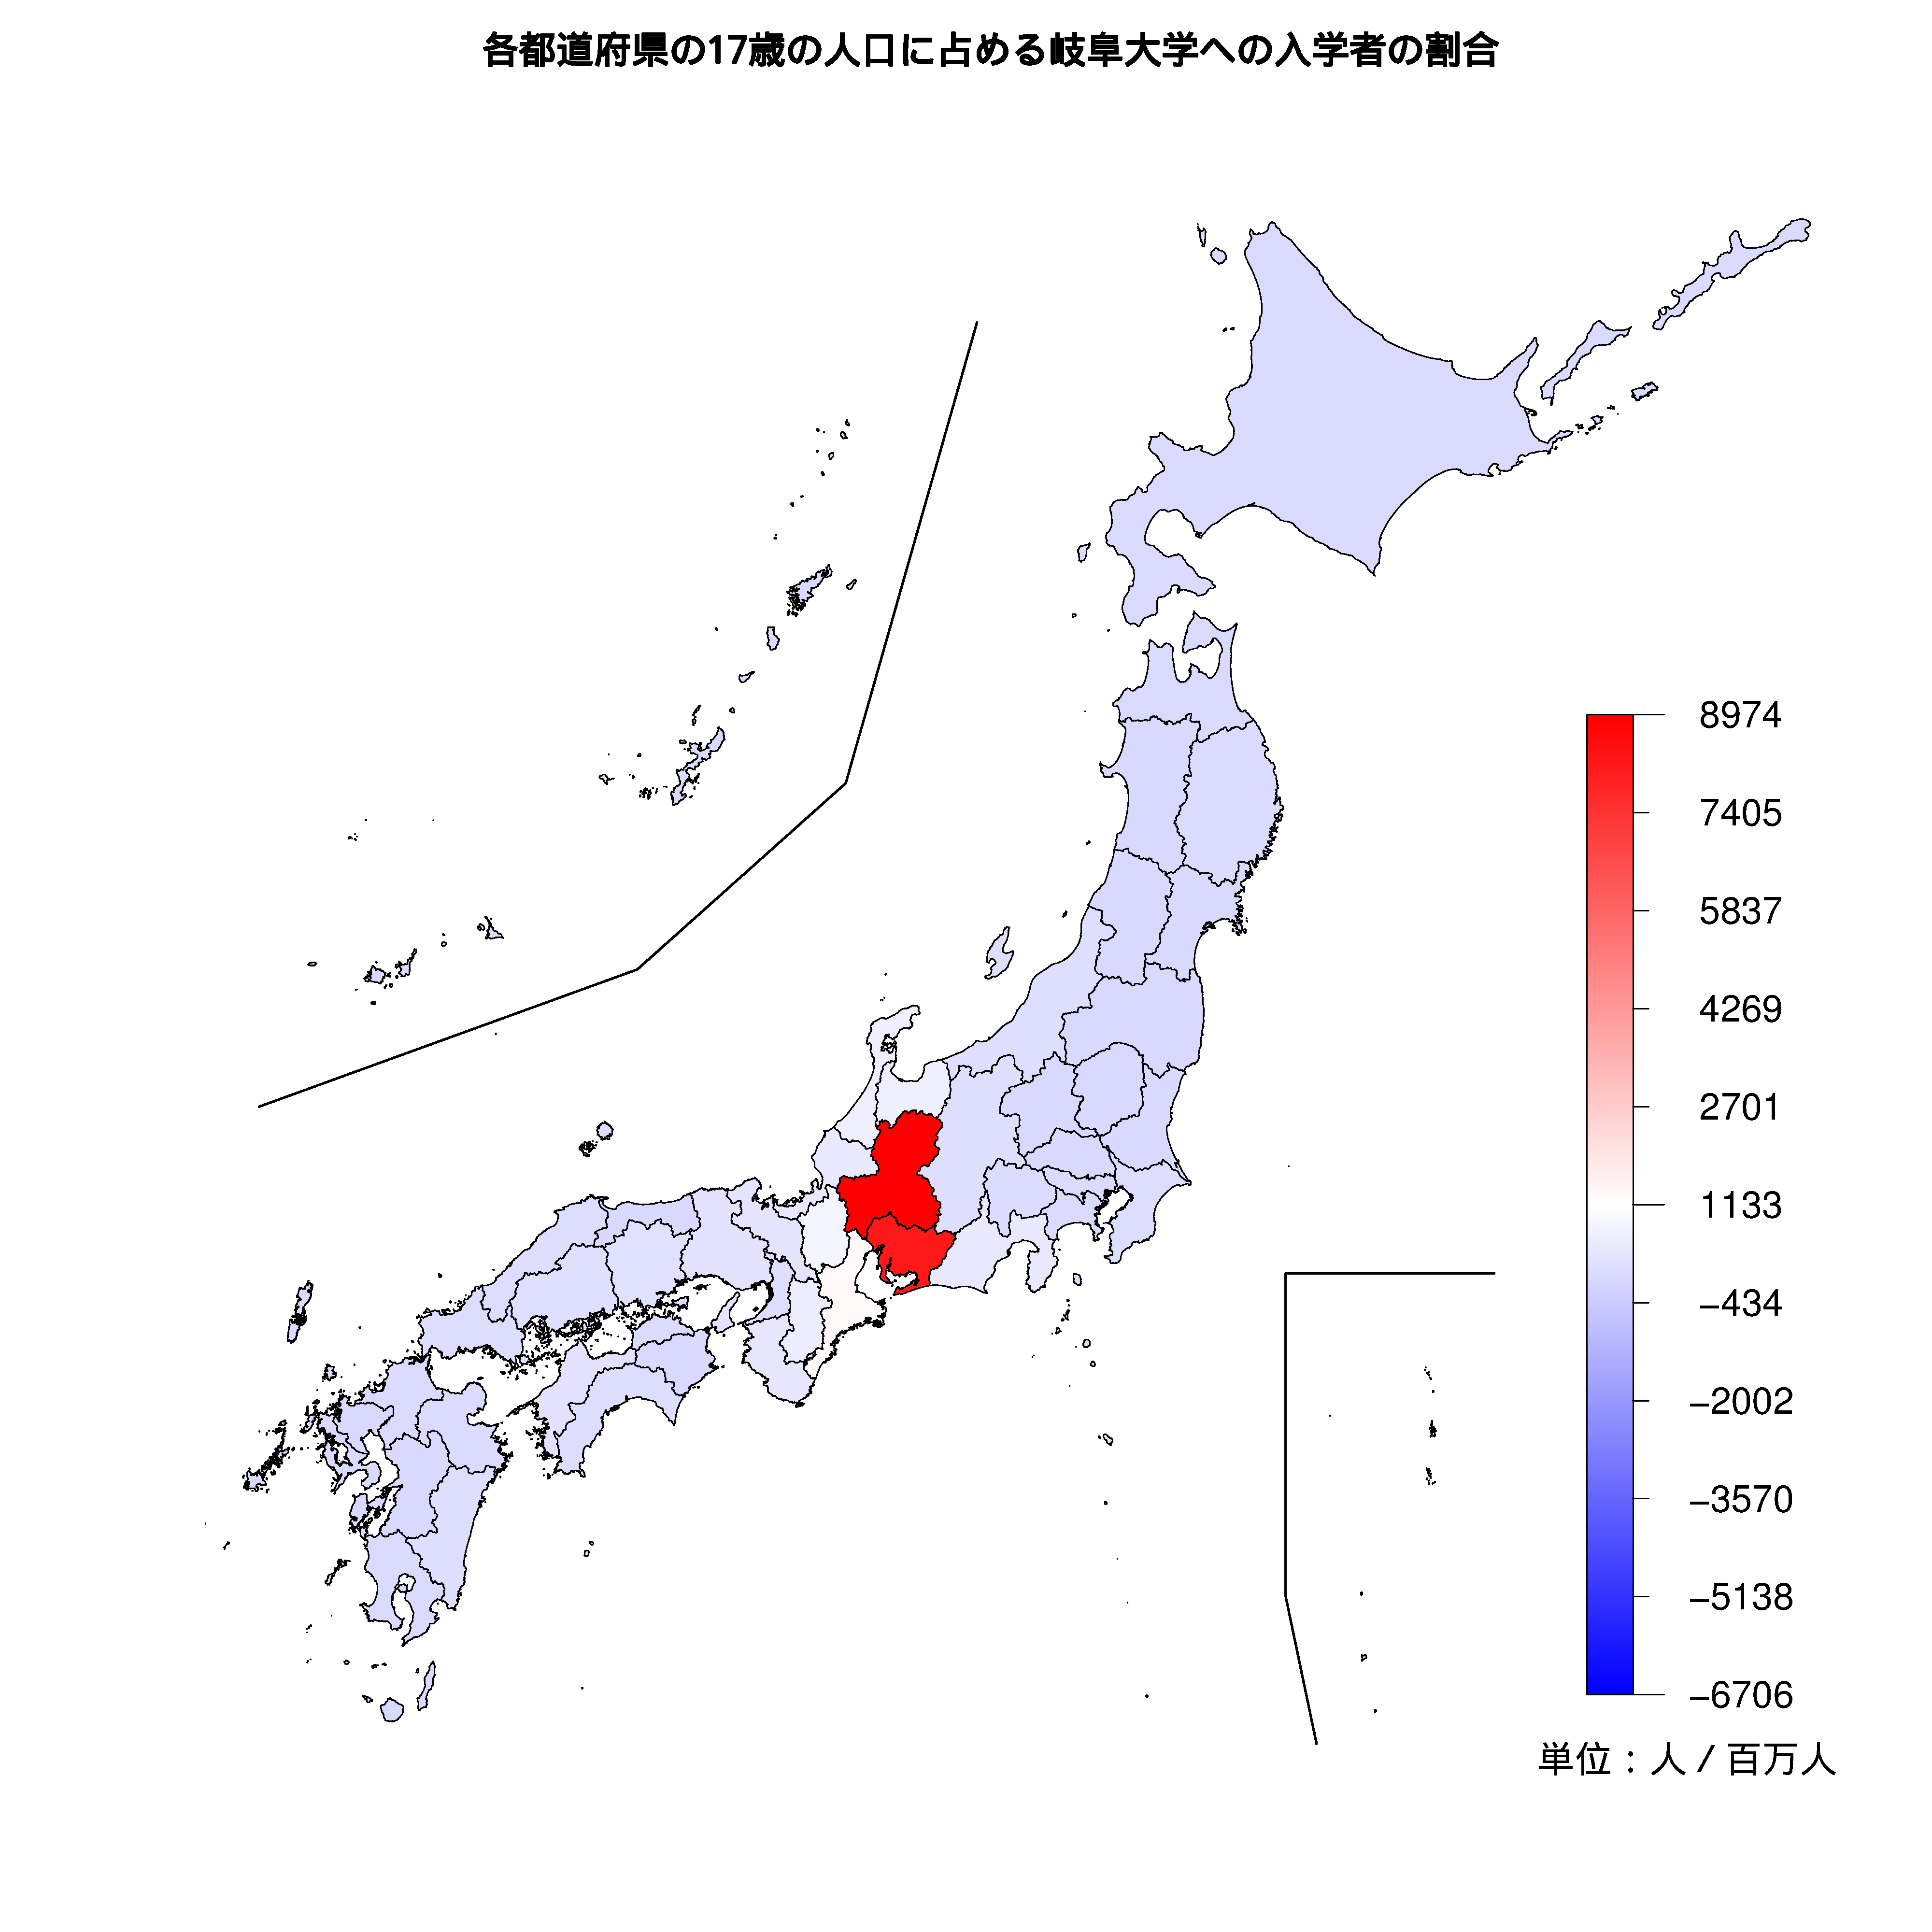 岐阜大学への入学者が多い都道府県の色分け地図